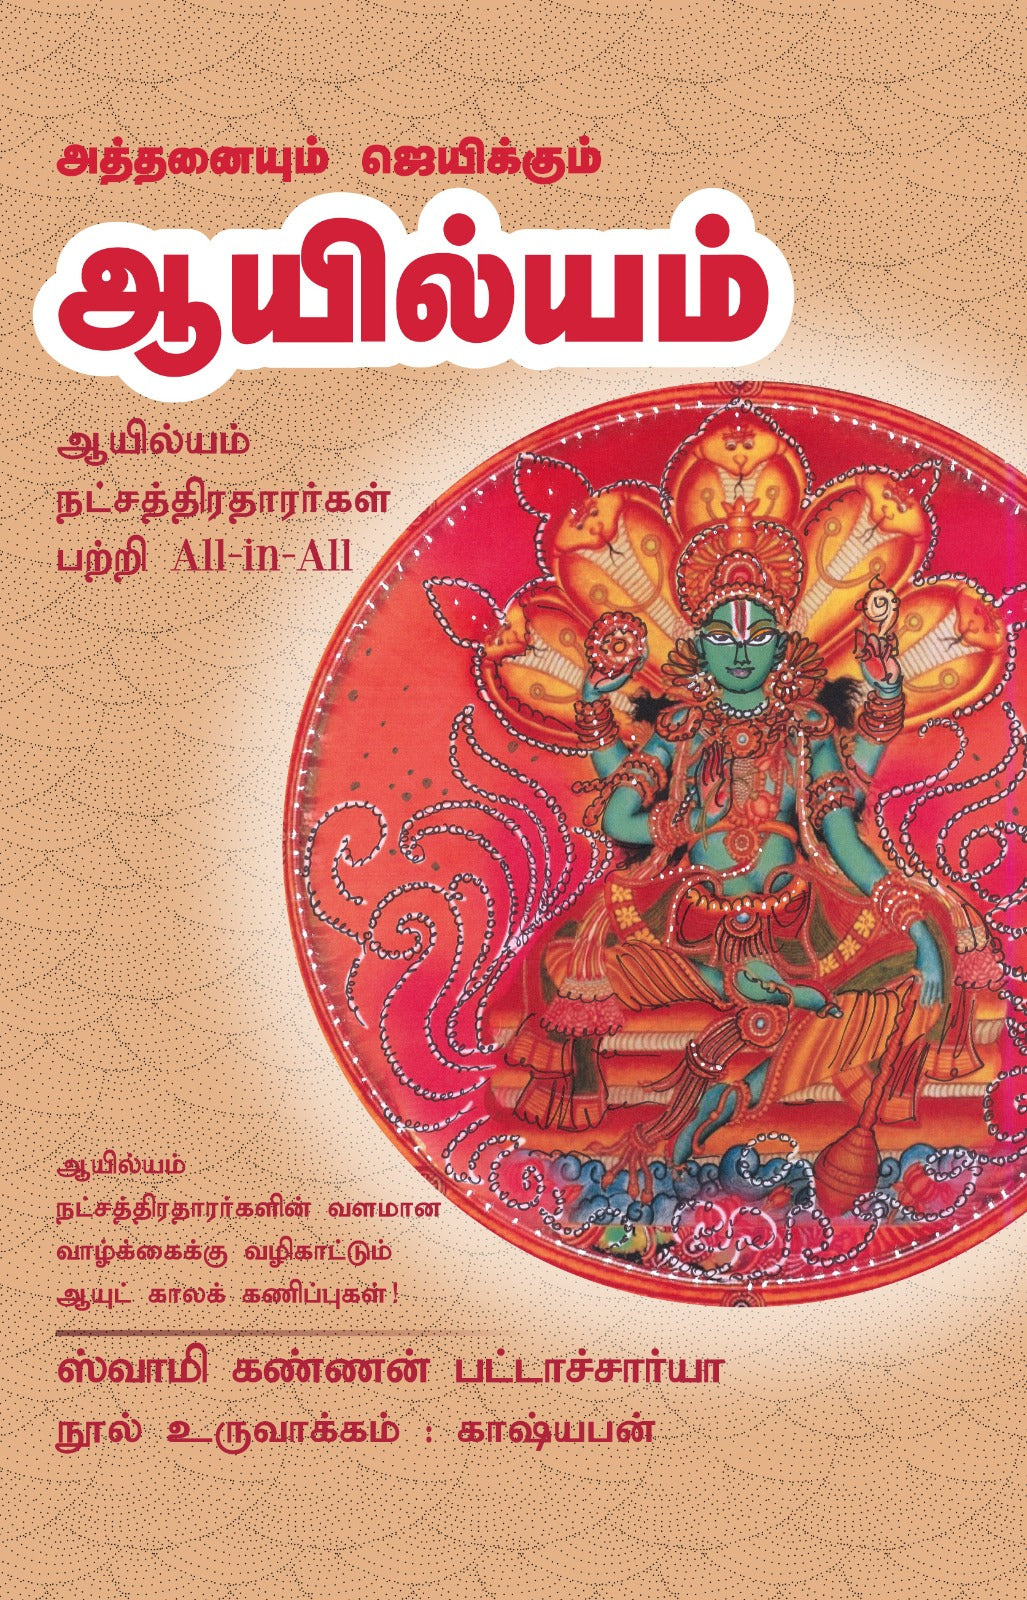 ஆயில்யம்- Athanaiyum Jeikkum Ayilyam All-in-All About Ayilyam Nakshatra- Tamil